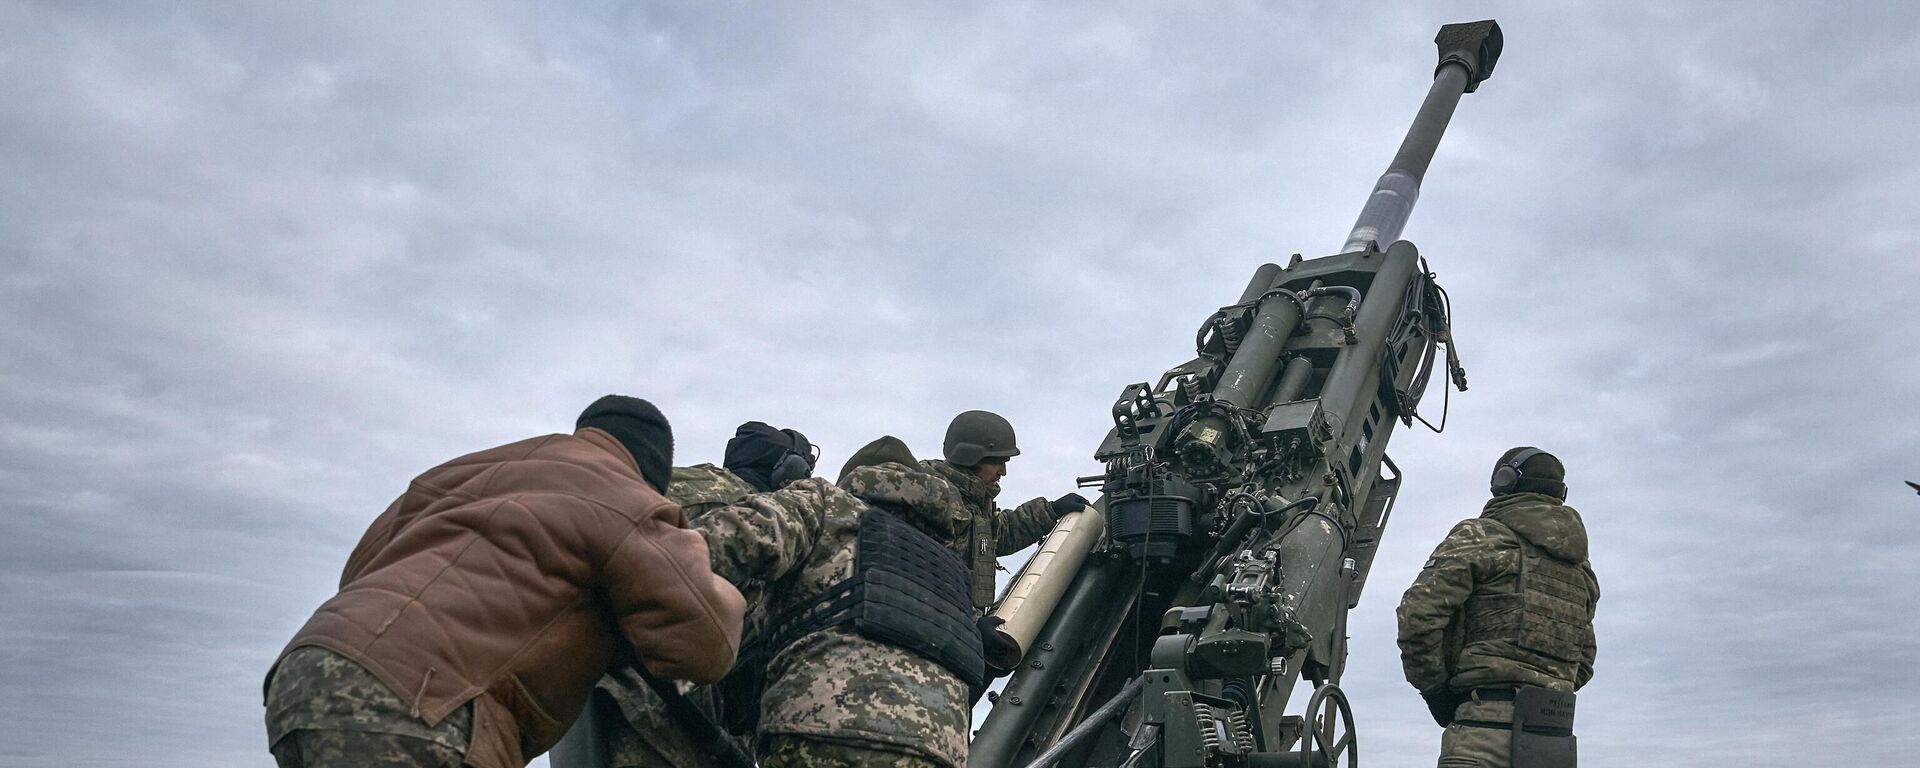 Militares ucranianos operan un sistema de artillería estadounidense M777 en la región de Jersón el 9 de enero de 2023 - Sputnik Mundo, 1920, 20.01.2023